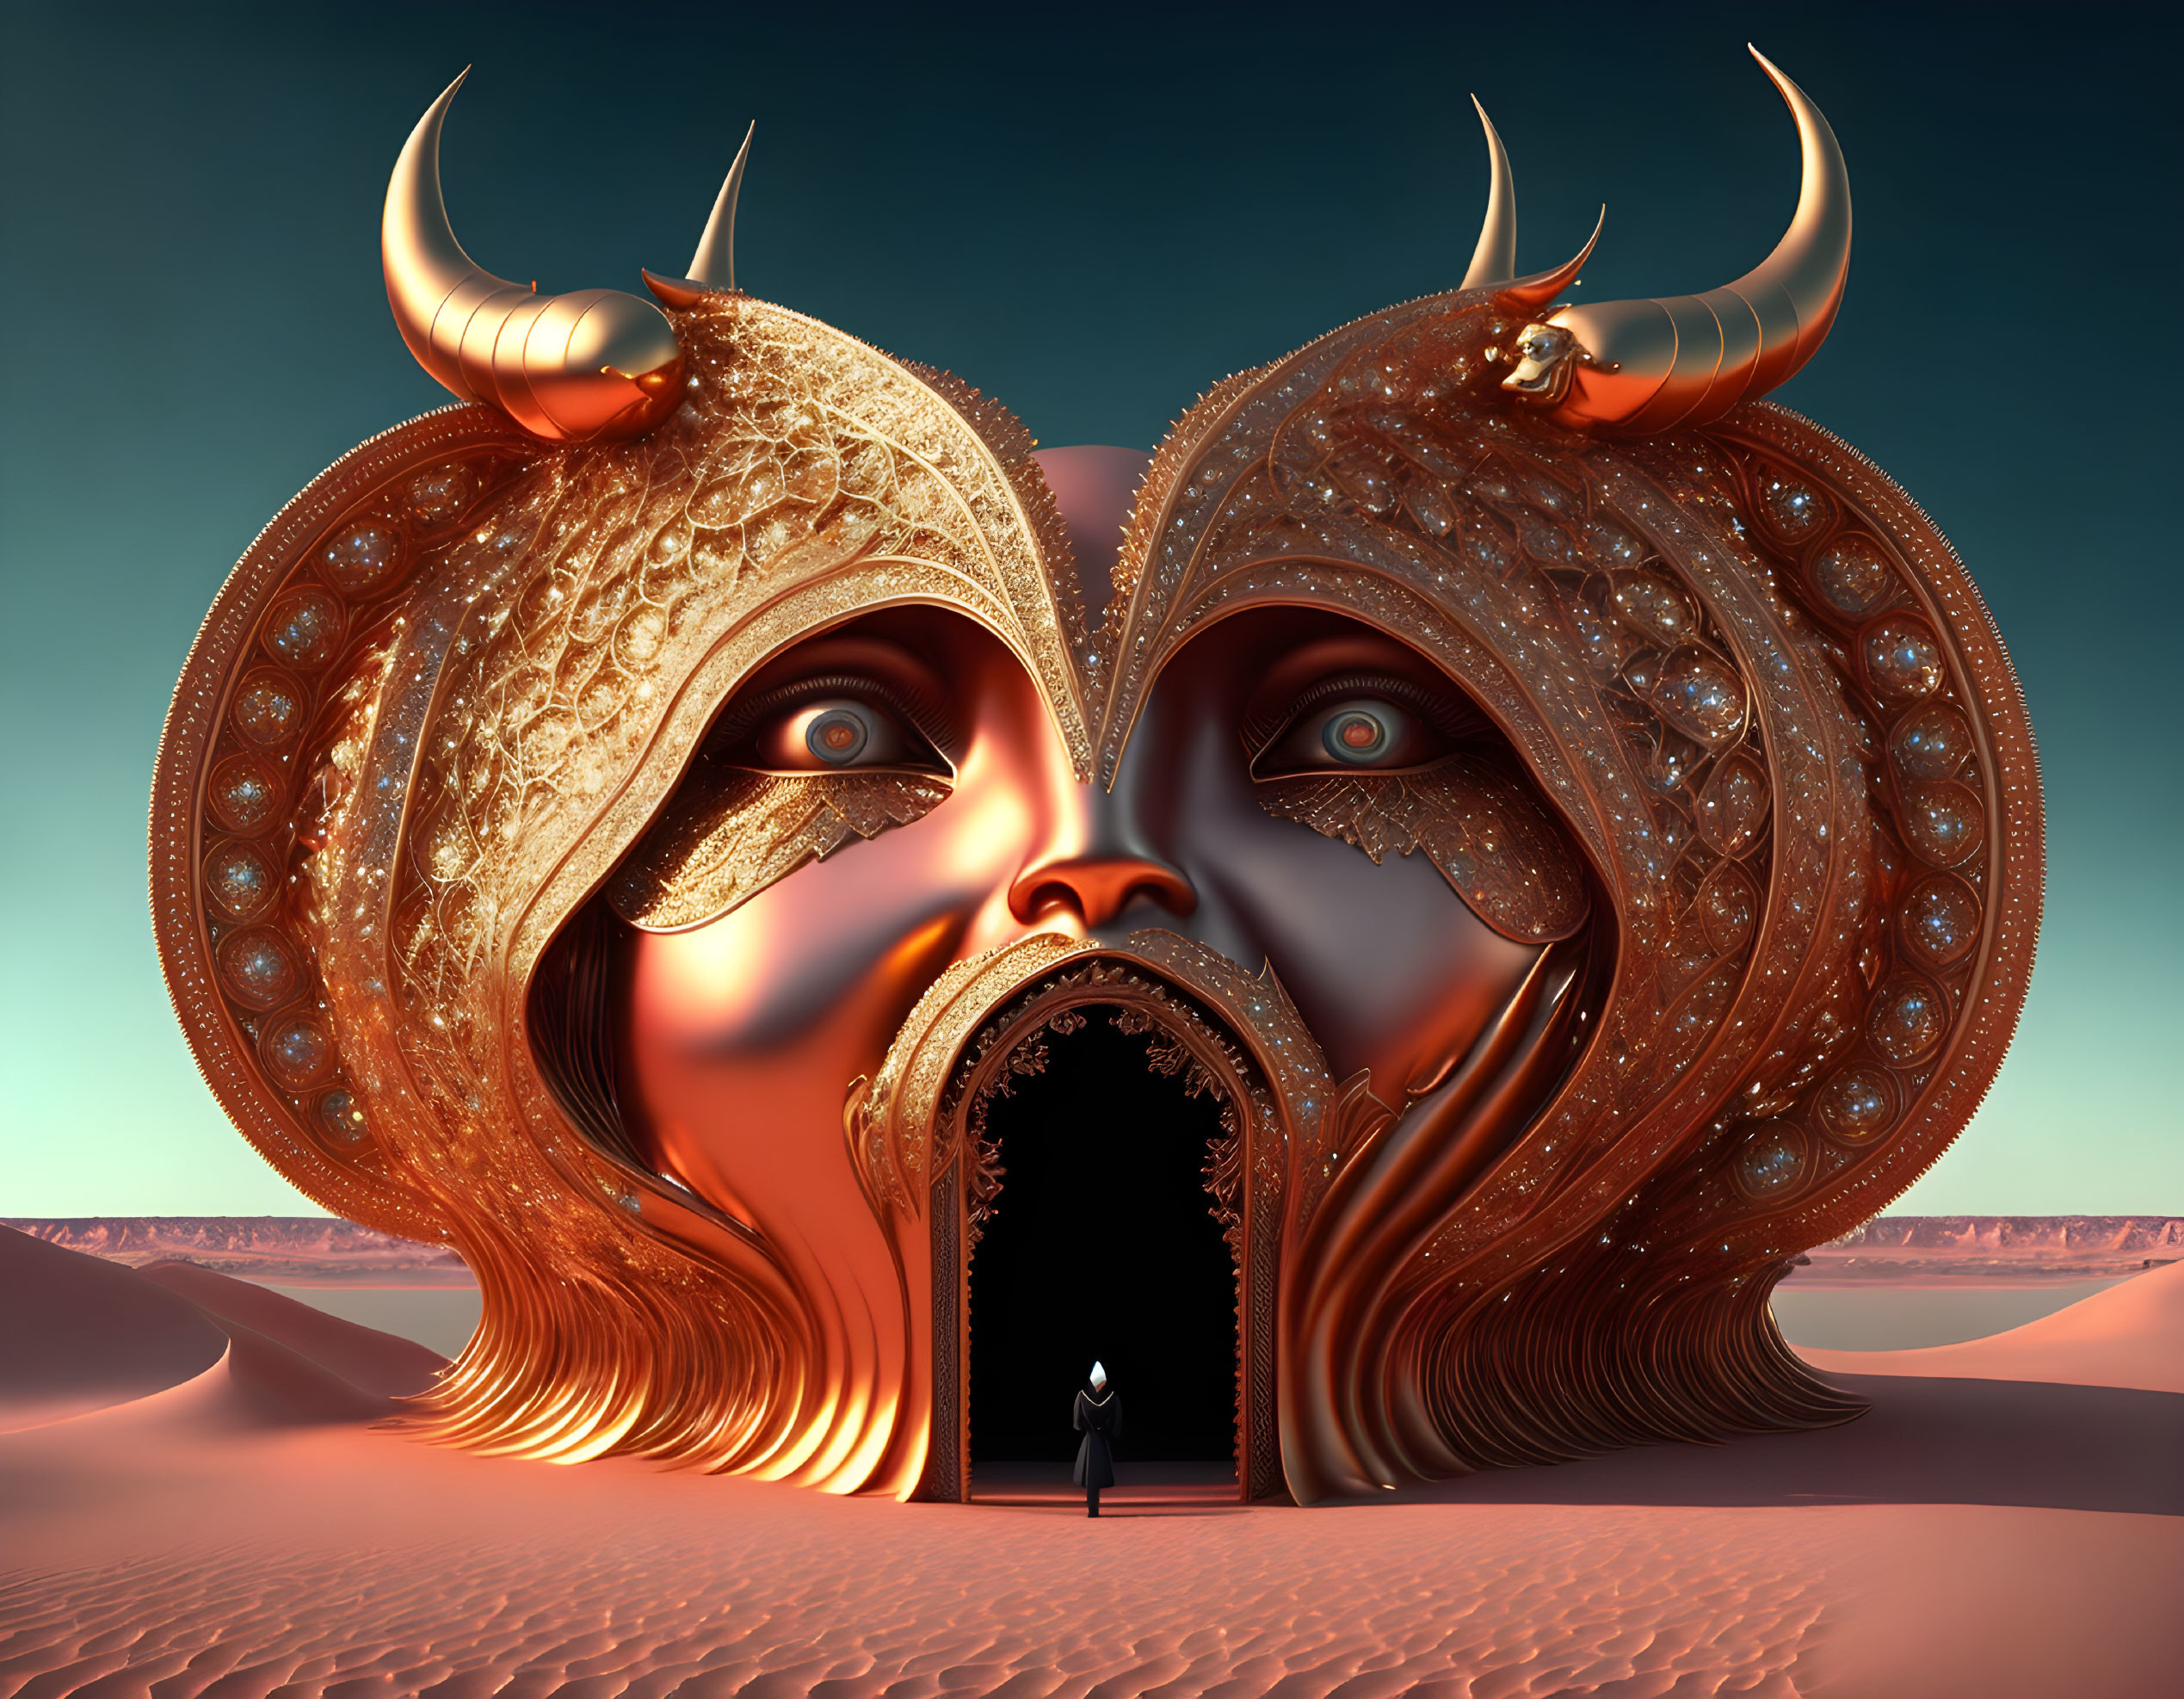 Gigantic ornate masks with horns in surreal illustration